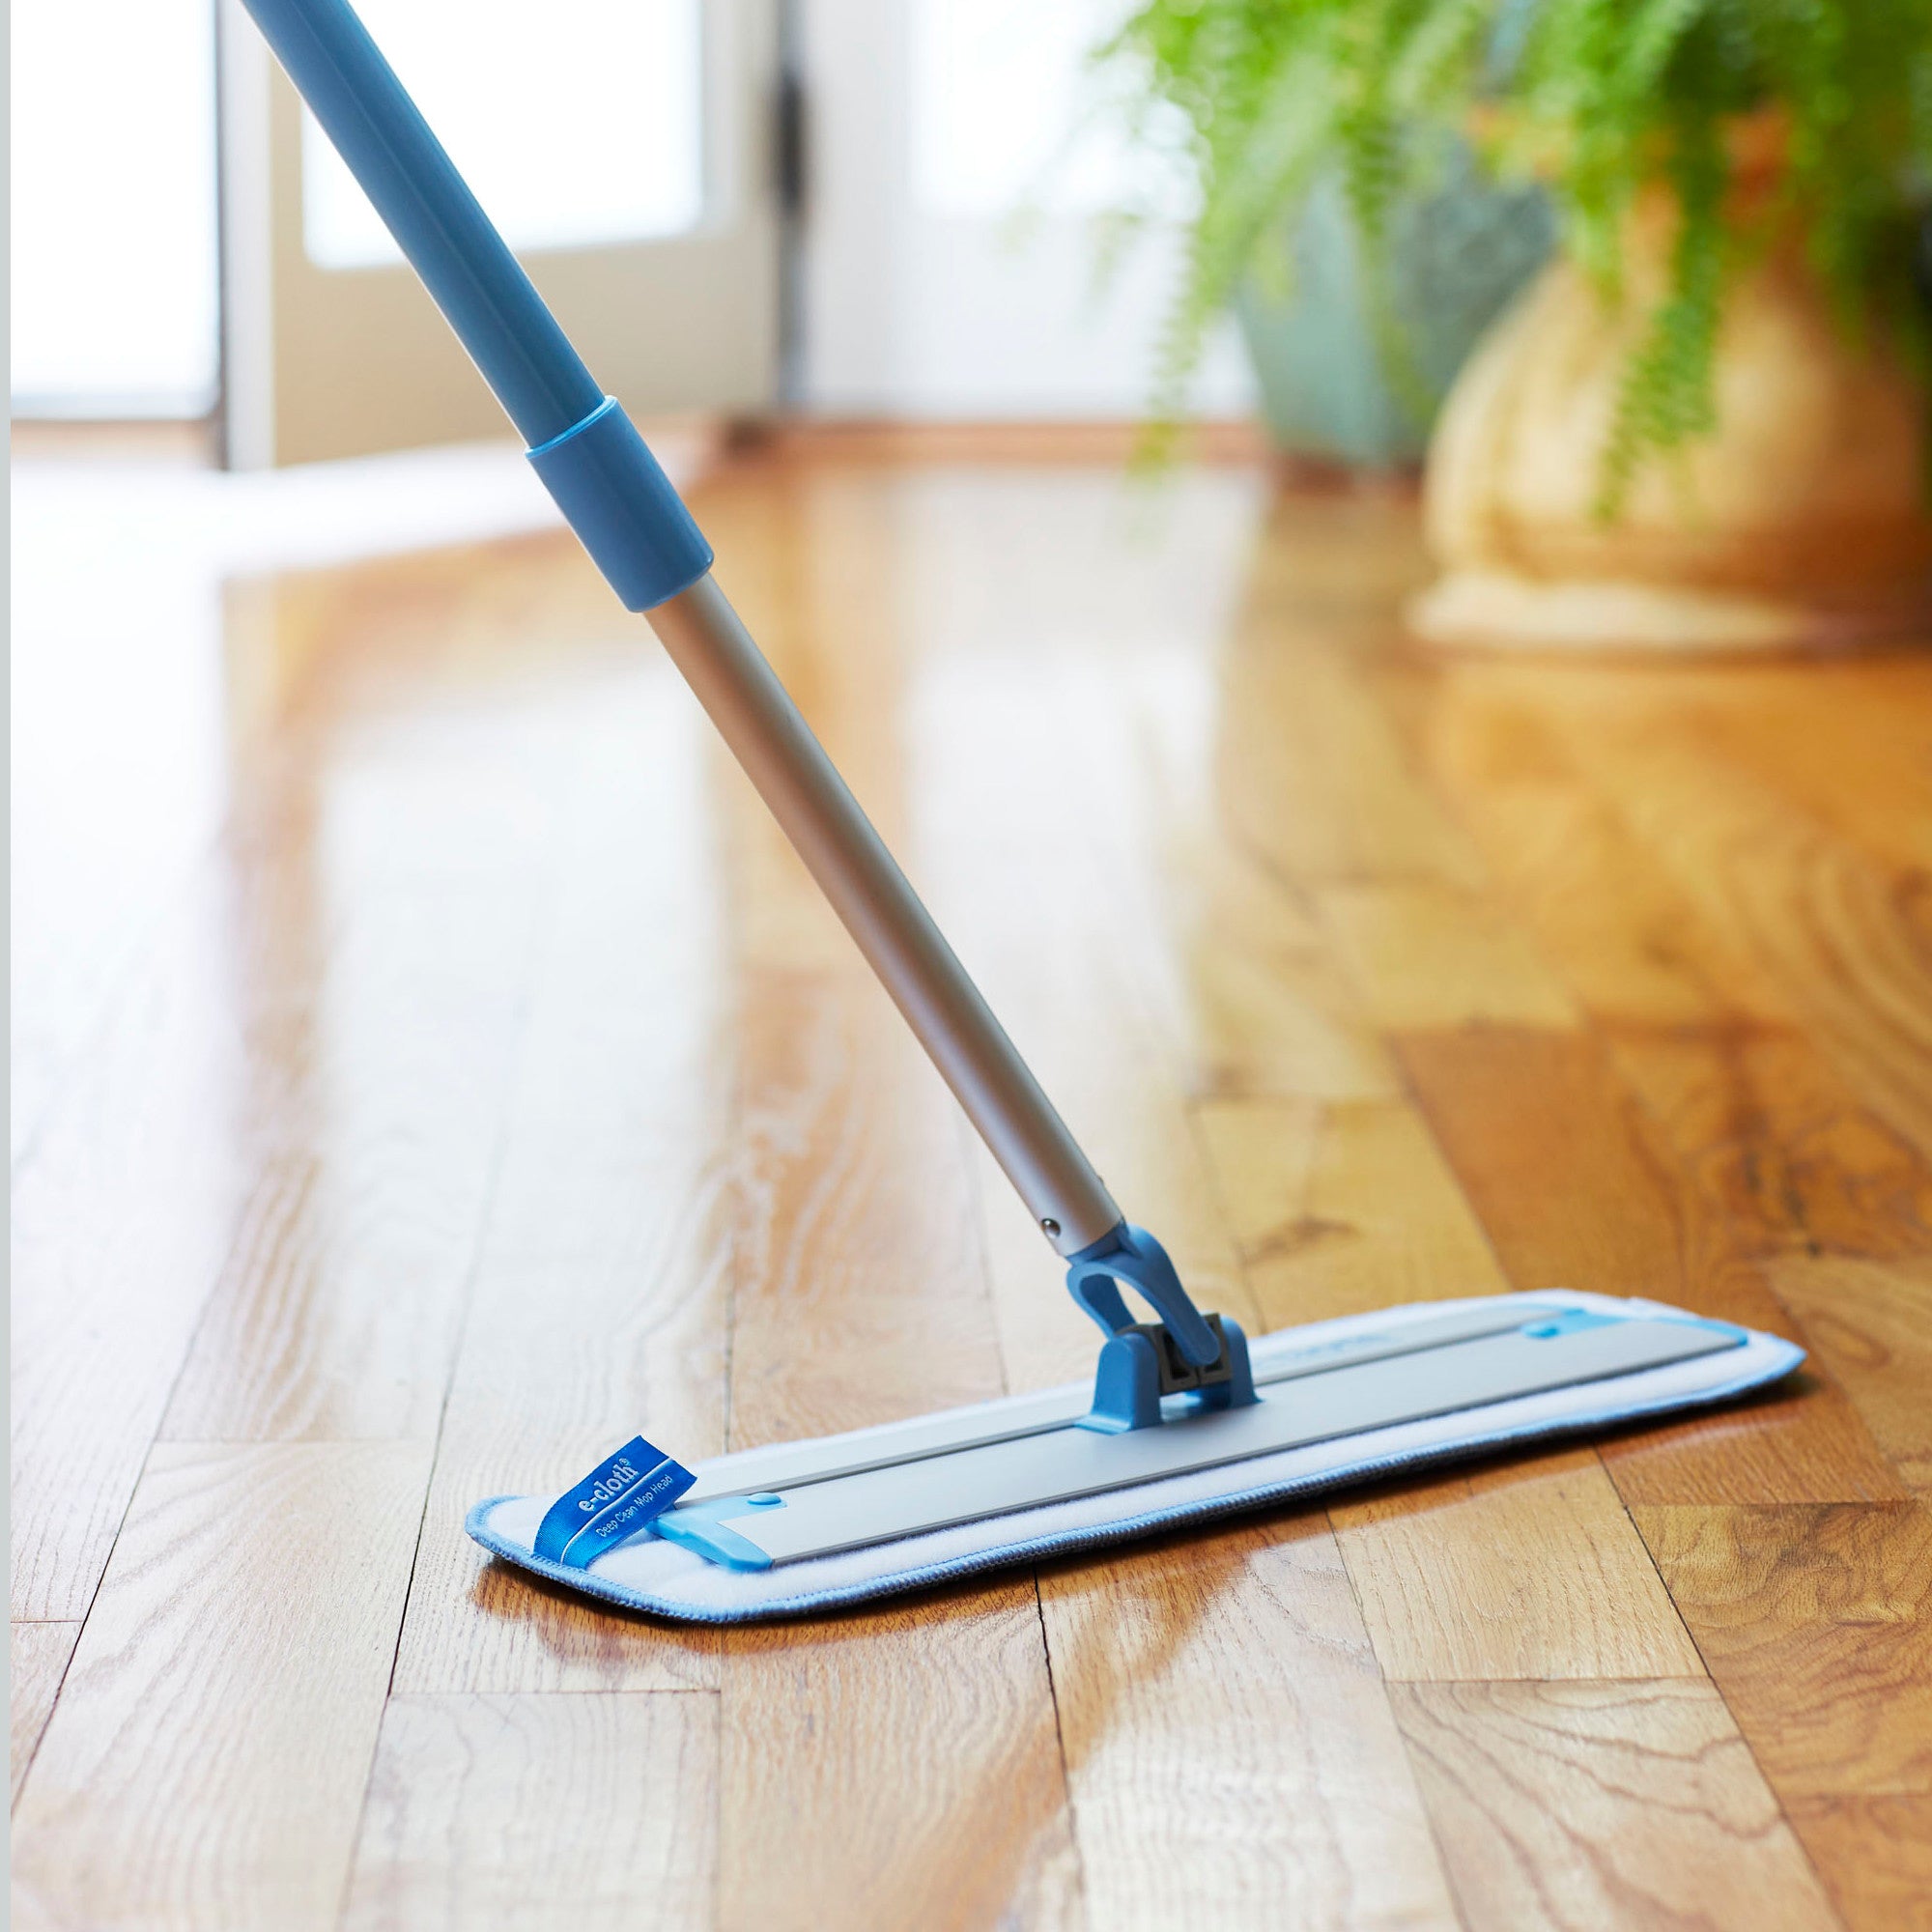 mop floor cleaning supplies